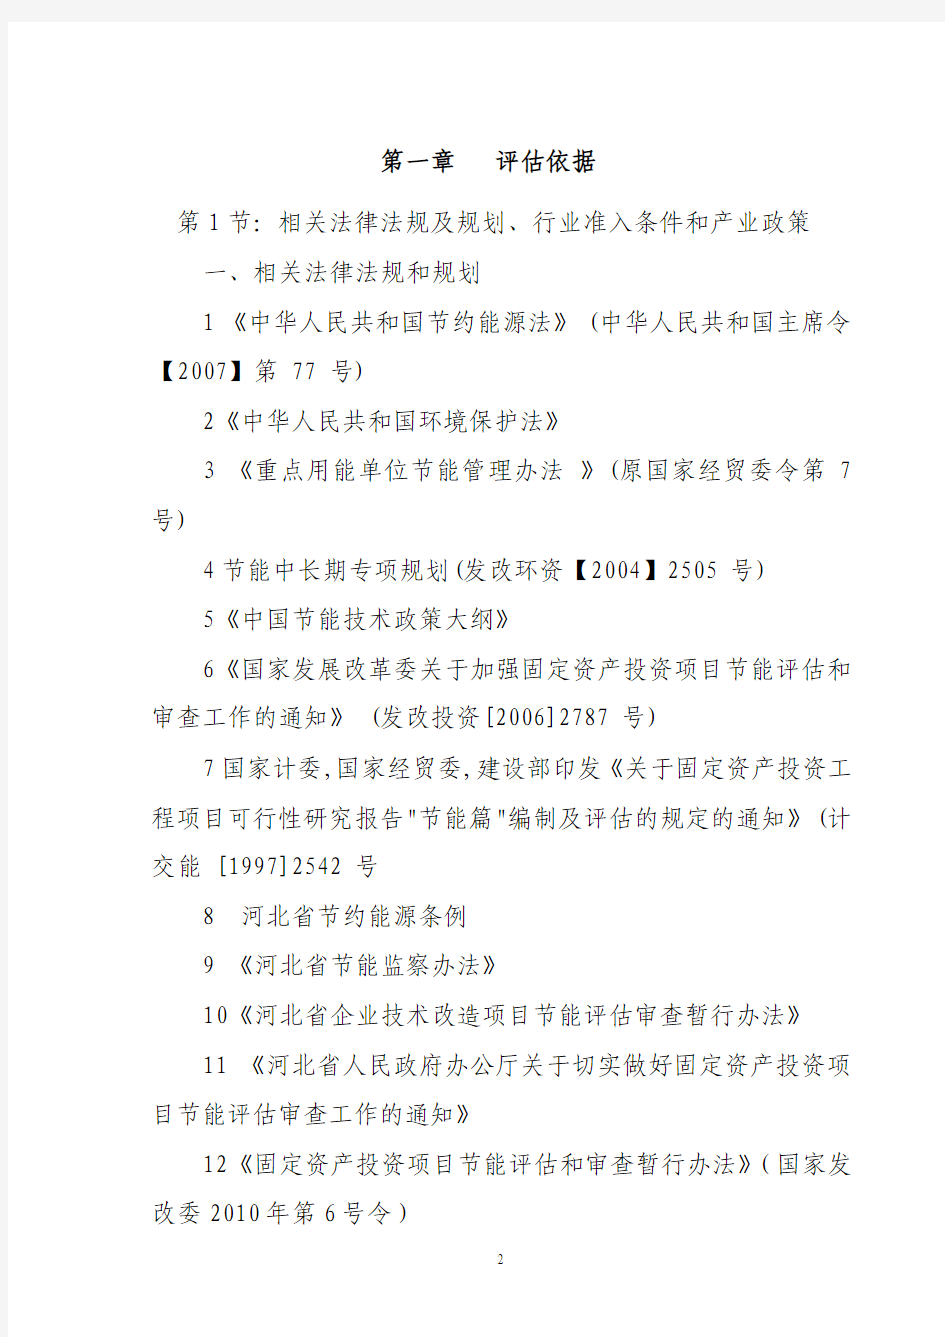 邢台天成纺织有限公司8万纱锭生产线项目节能评估报告书